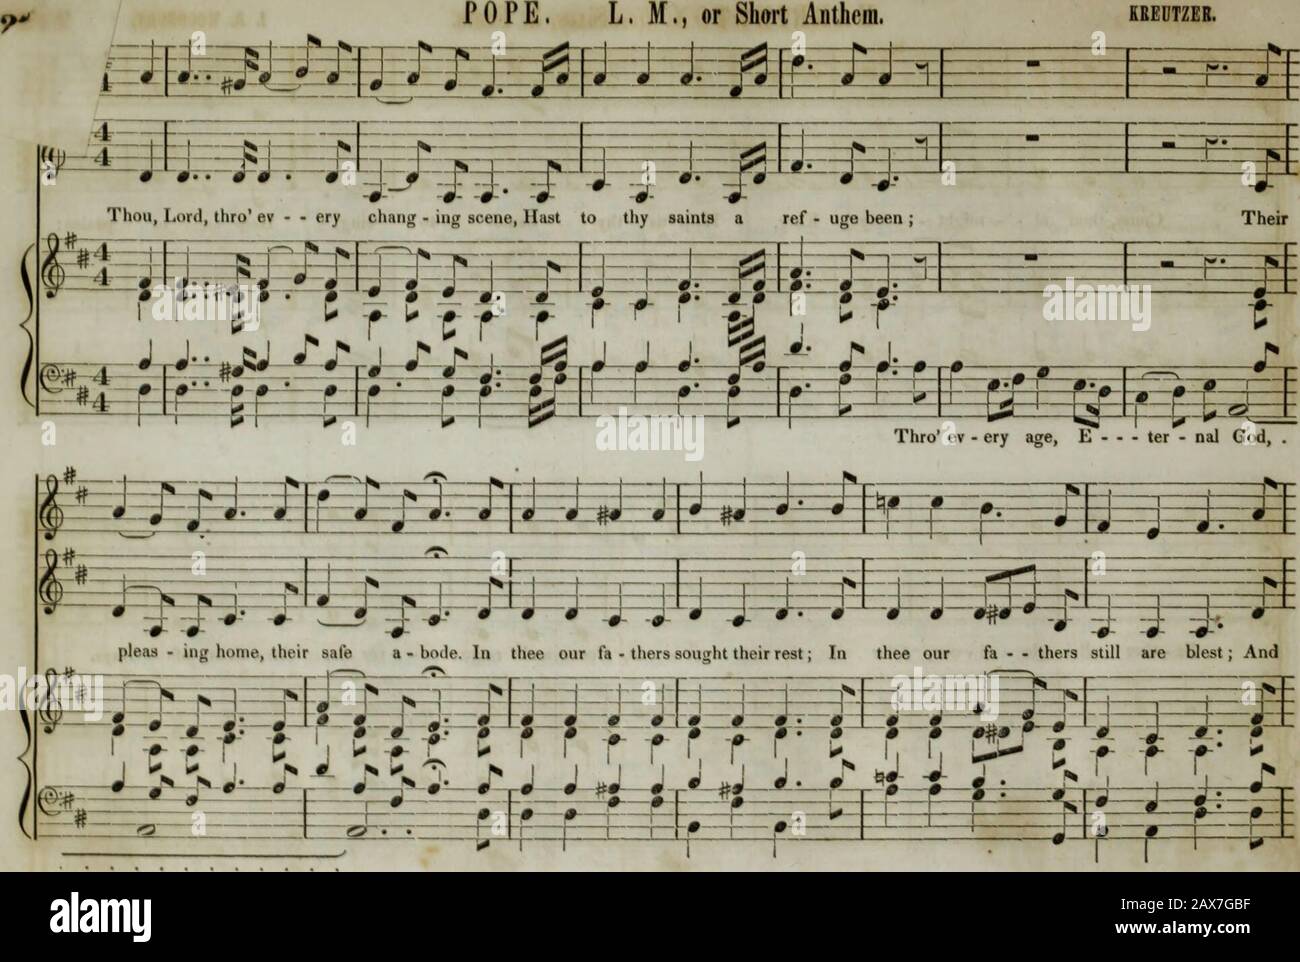 La collection de musique d'église de la Boston Musical Education Society : composée de musiques originales de psaume et d'hymnes, de pièces, de chants et de c.; y compris des compositions adaptées au service de l'Église épiscopale protestante . 63 • HARRINGTON, Sixes et Fours. I b. Woodbury. 22 s&gt; h-i—r-f—?- 9 ^ # * ¥— 1 ! 1 f L | 1. ! 1—1 Lj 1 1— - F 1 U 4 1 9— r ? j ? * J—J— Come, Tu al - - pourrait - - ; r King, aide-nous ton nom à Essiejee chanter, aide-nous à 1 11 11 louange; j- j. -i &—8 f—1»—^-i ARM 2 ^ J- —& 0— j- j j 9 i ——1— ^E FC=f=f=H y-^ r-f j 1 ^ 1 1 ? 1 i 1 Fa • Ter All Glo - ri - ous, -i—H- Oe Banque D'Images